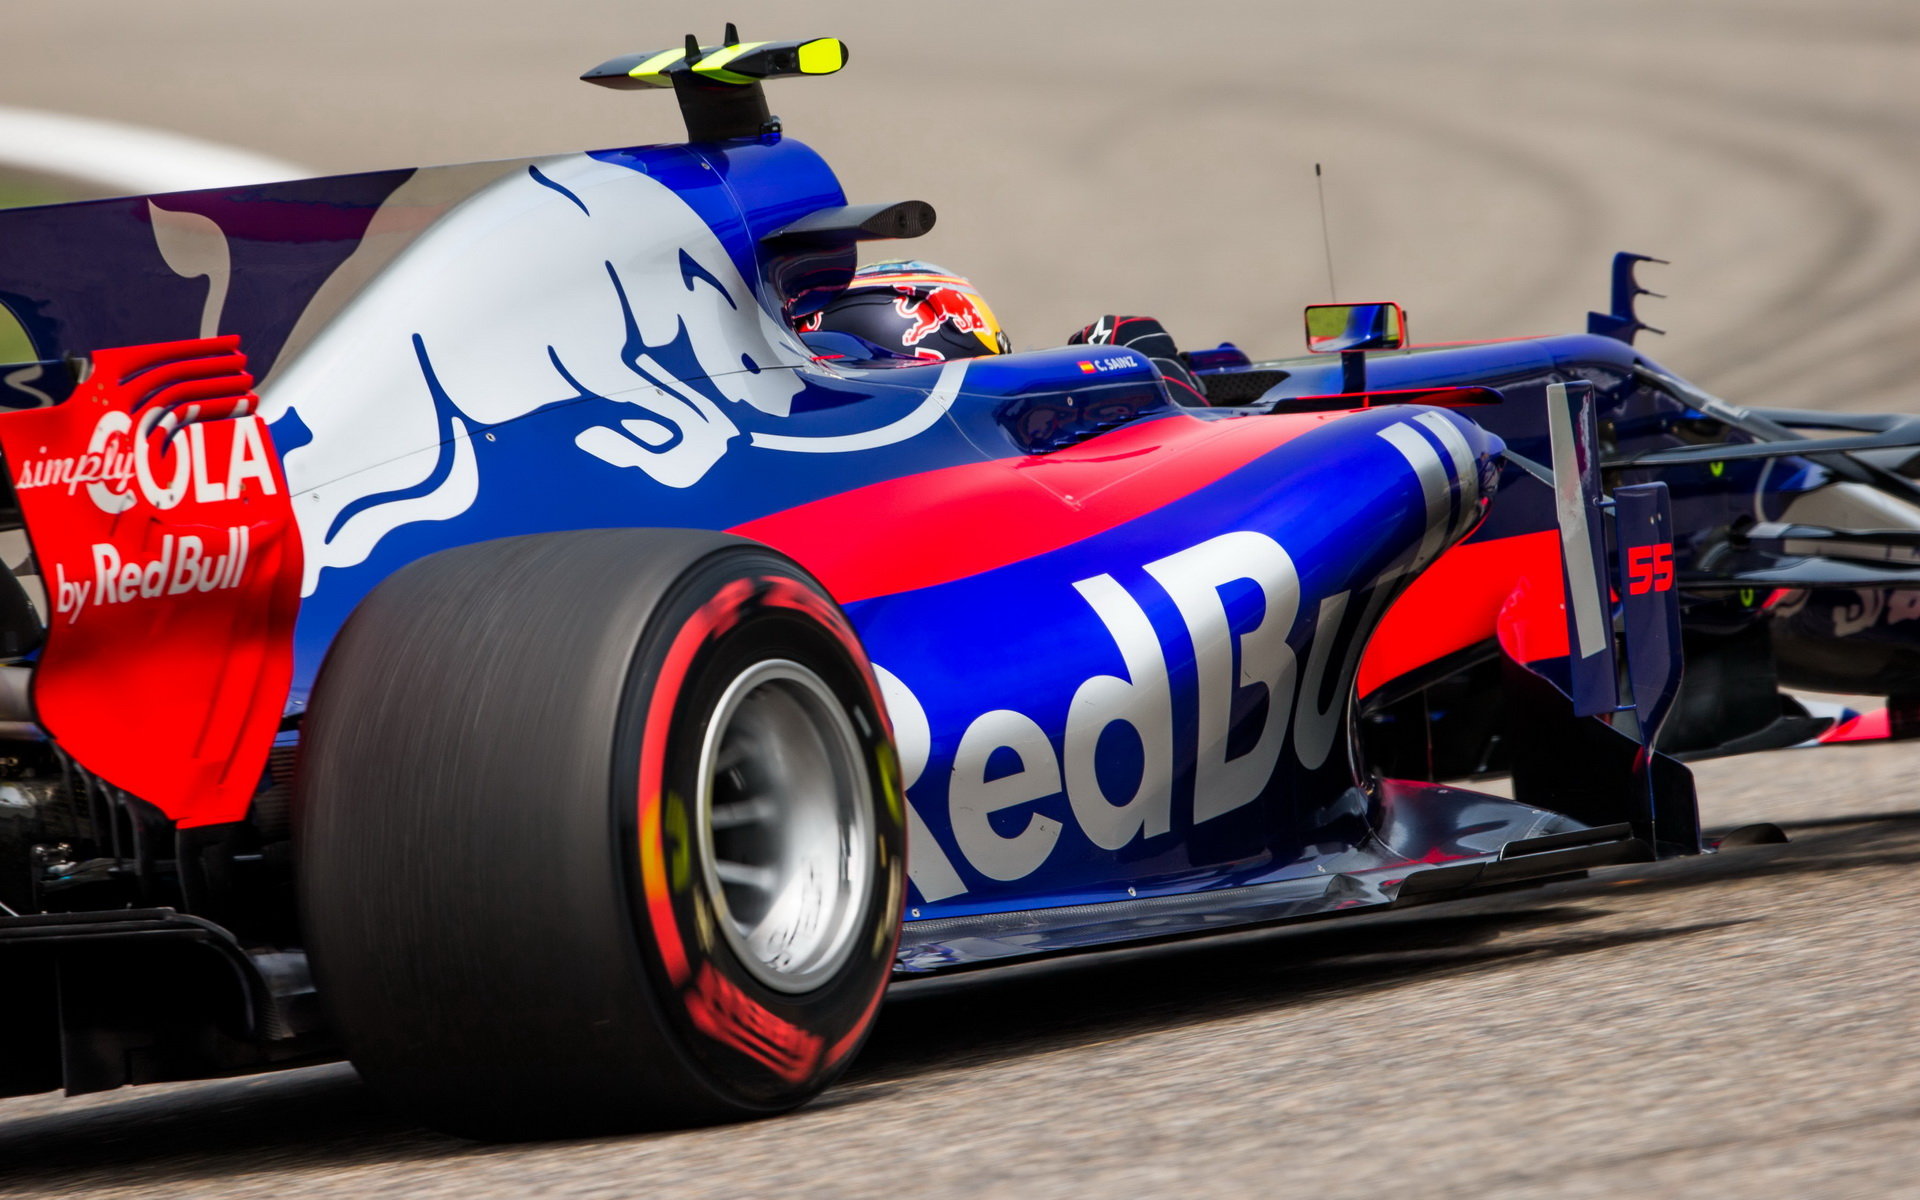 Navzdory posledním neúspěchům má Kvjat stále důvěru vedení Red Bullu